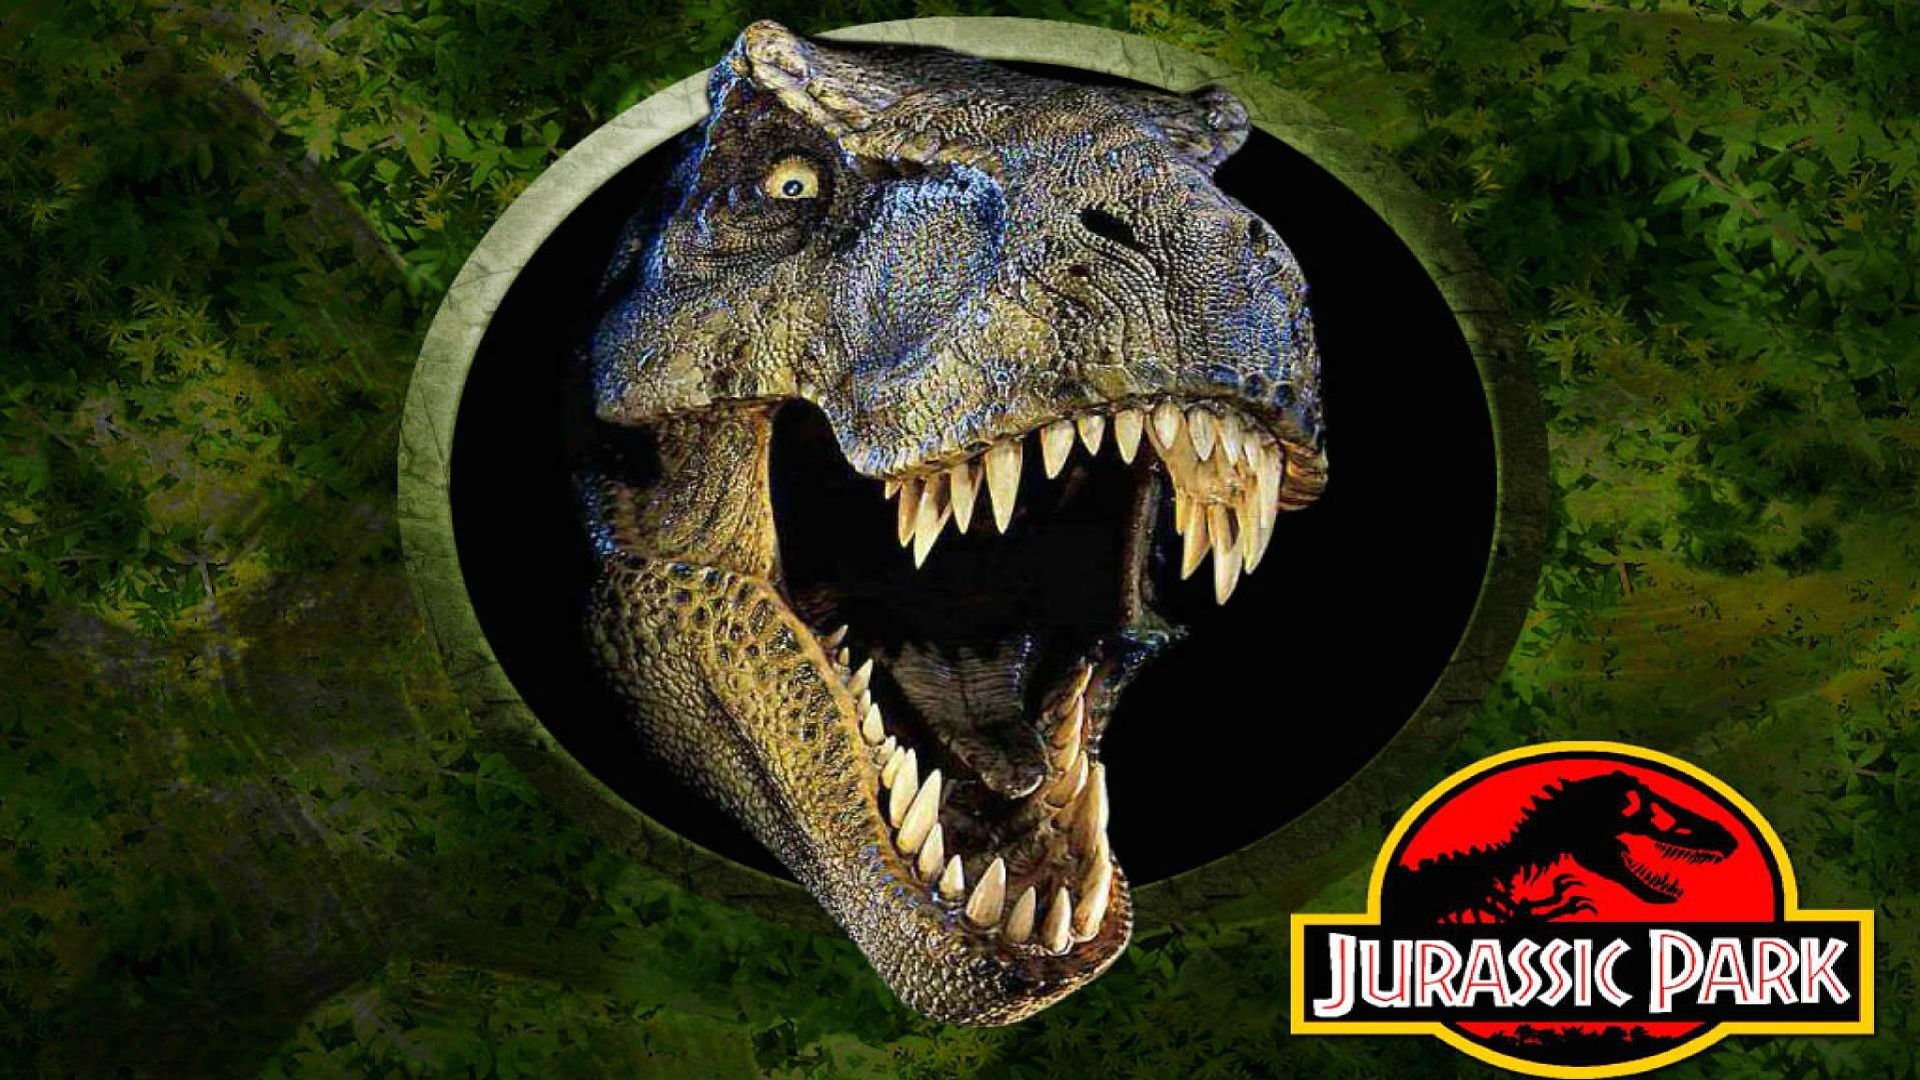 1920x1080 JURASSIC PARK adventure sci-fi fantasy dinosaur movie film poster wallpaper  |  | 289245 | WallpaperUP